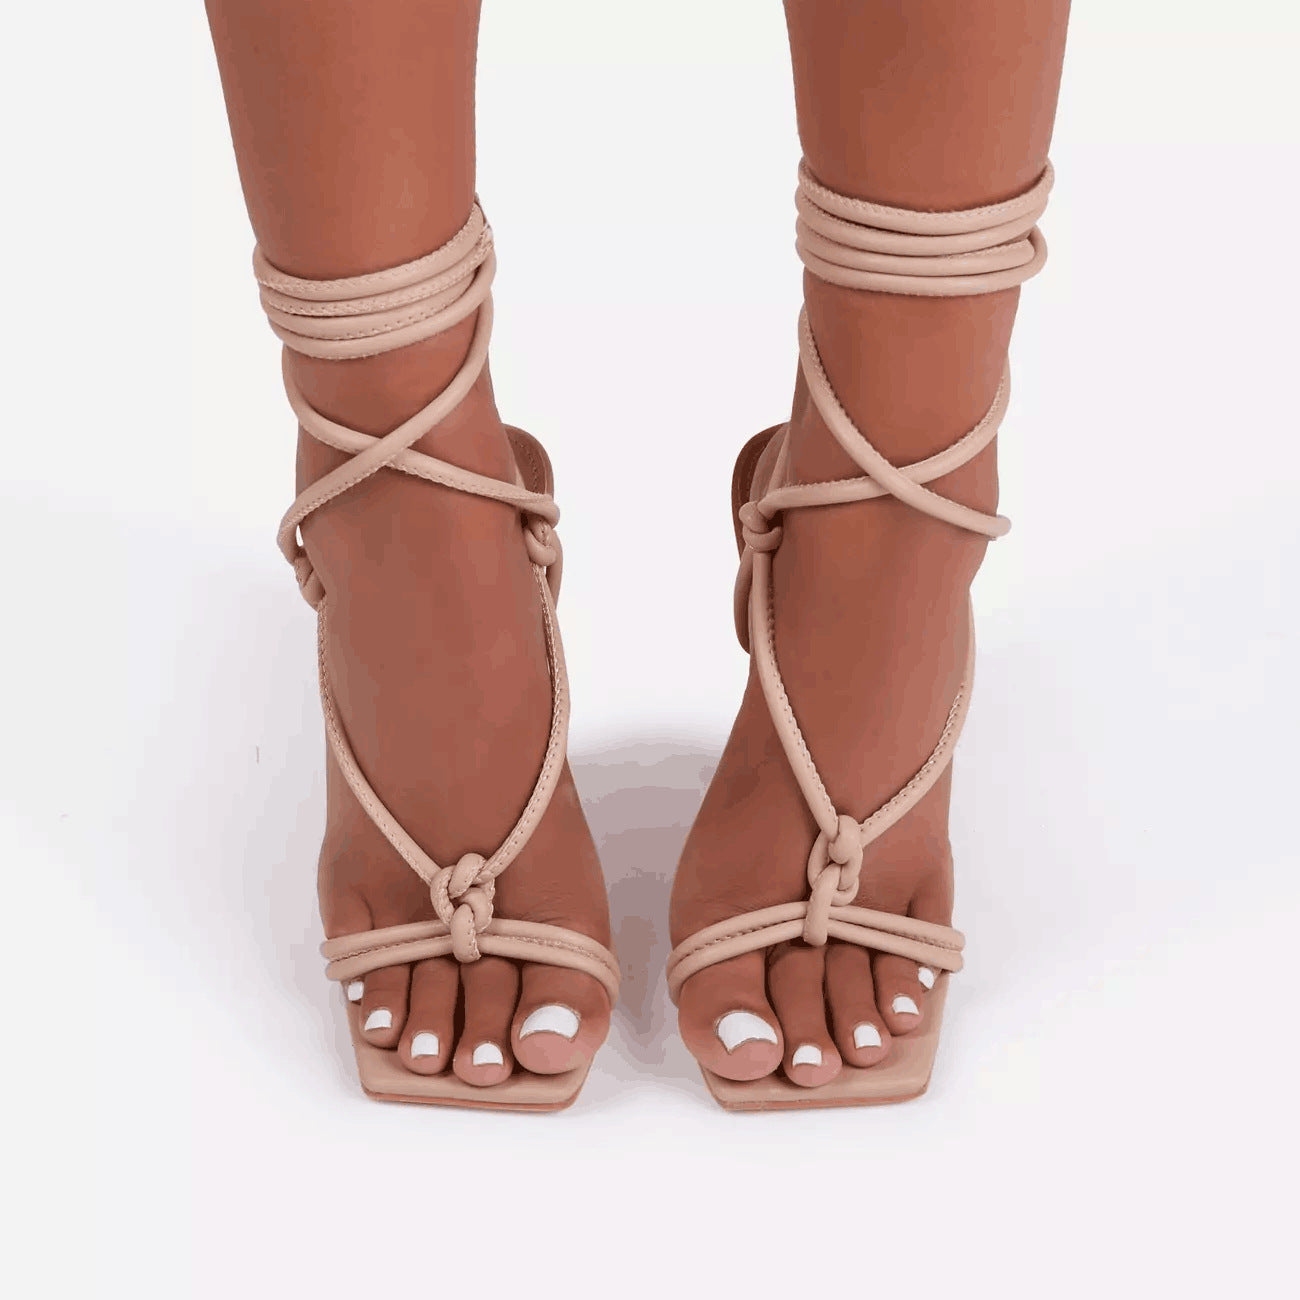 High-Heeled Sandals